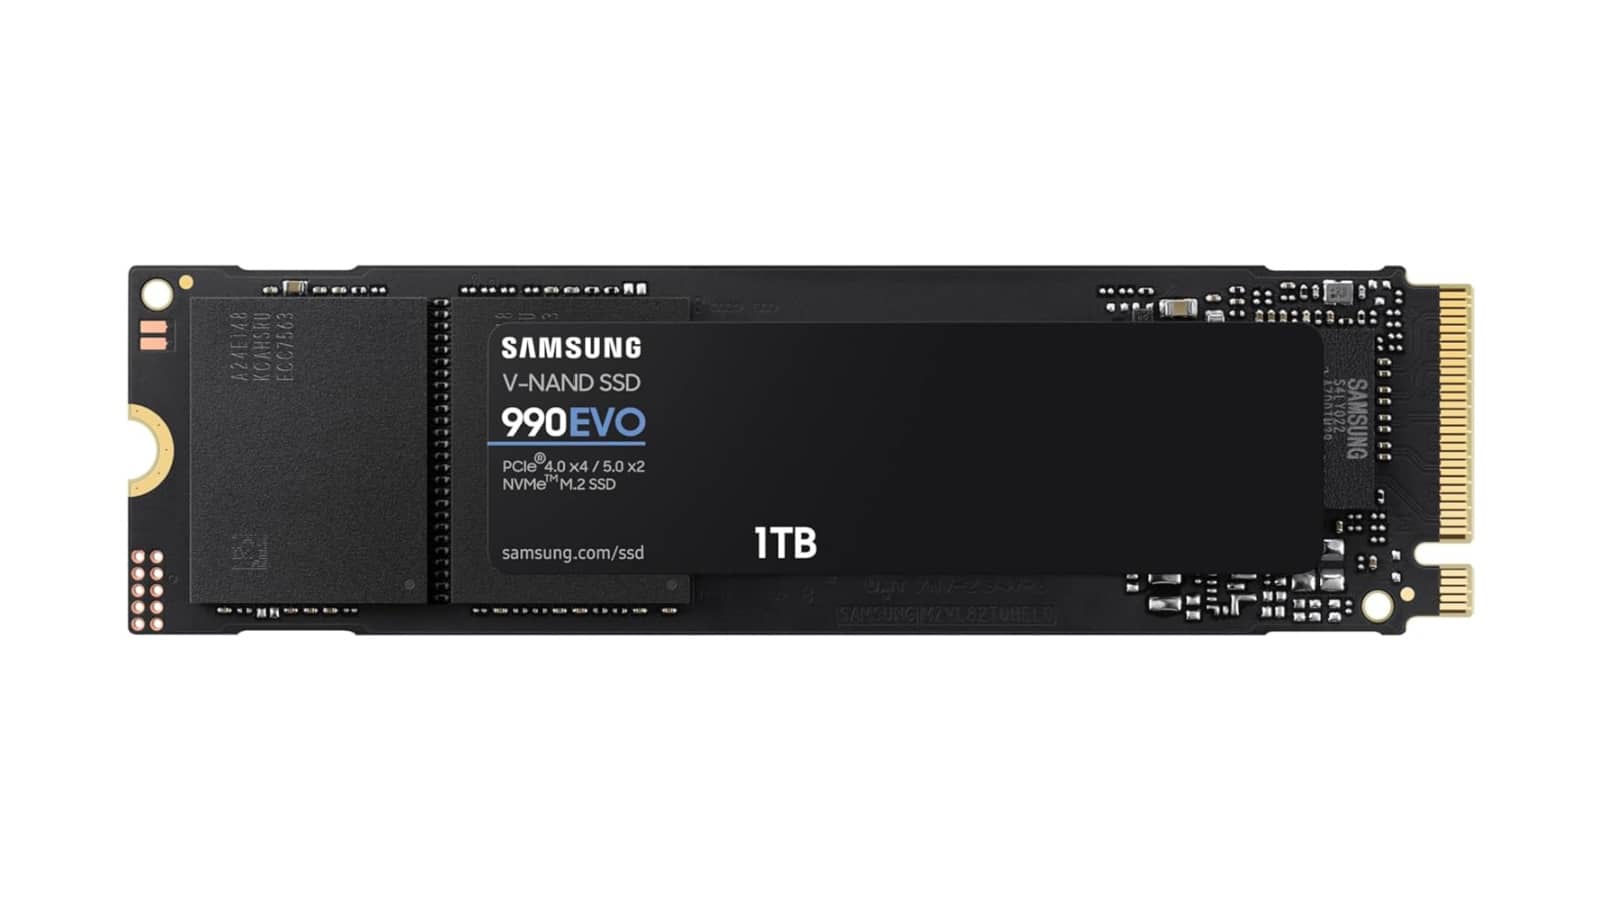 Obtenga 1 TB de almacenamiento con el Samsung 990 EVO por $ 80